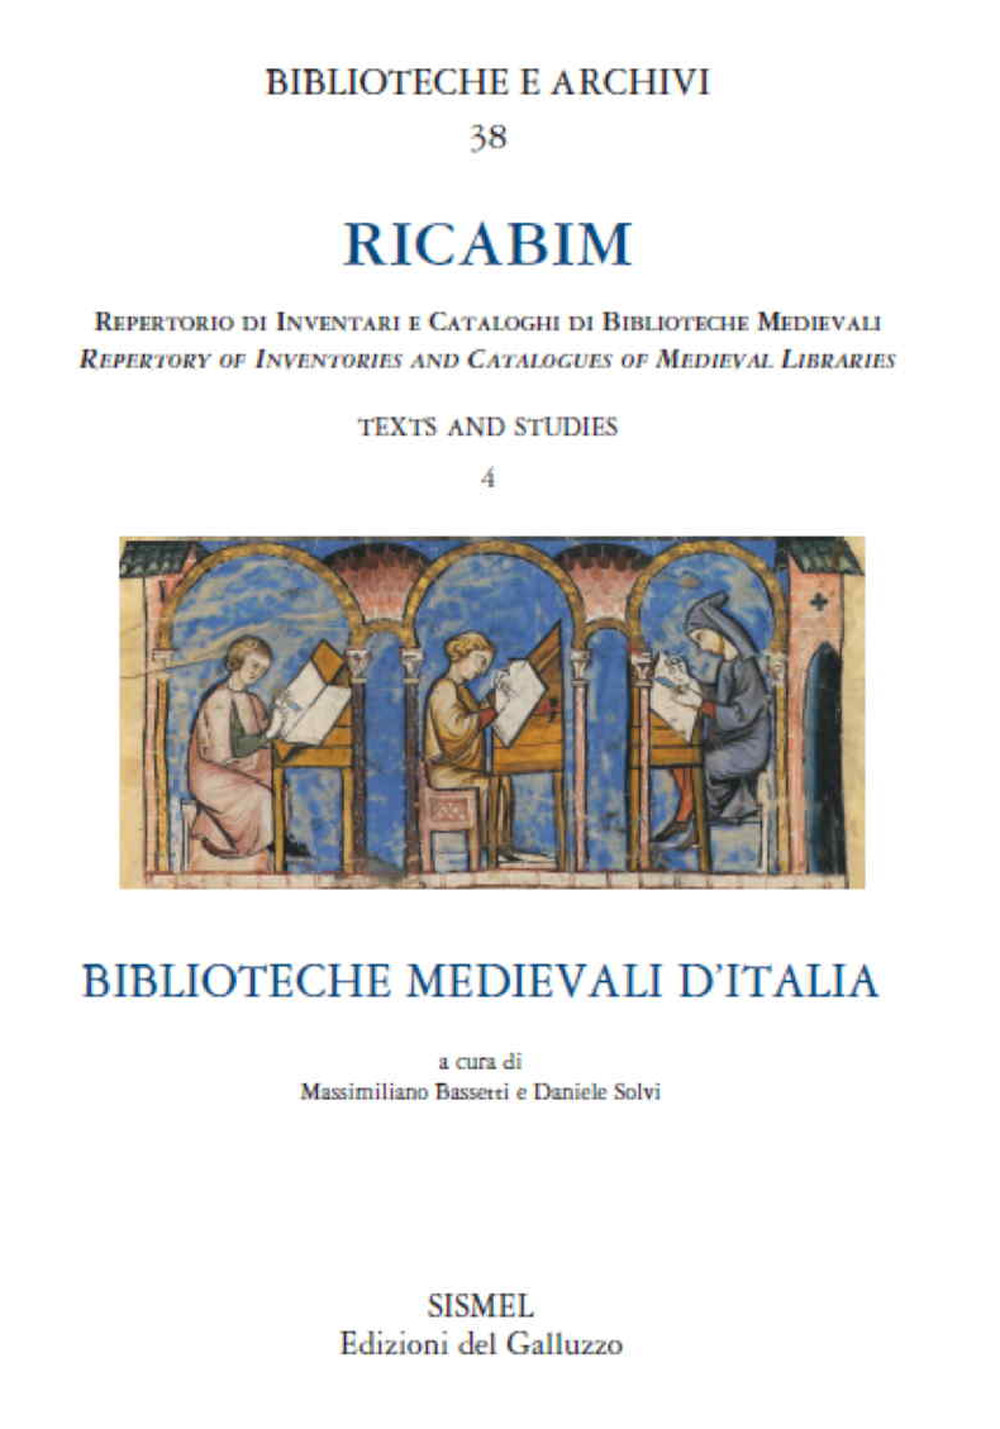 RICABIM. Repertorio di inventari e cataloghi di biblioteche medievali. Text and studies. Vol. 4: Biblioteche medievali d'Italia